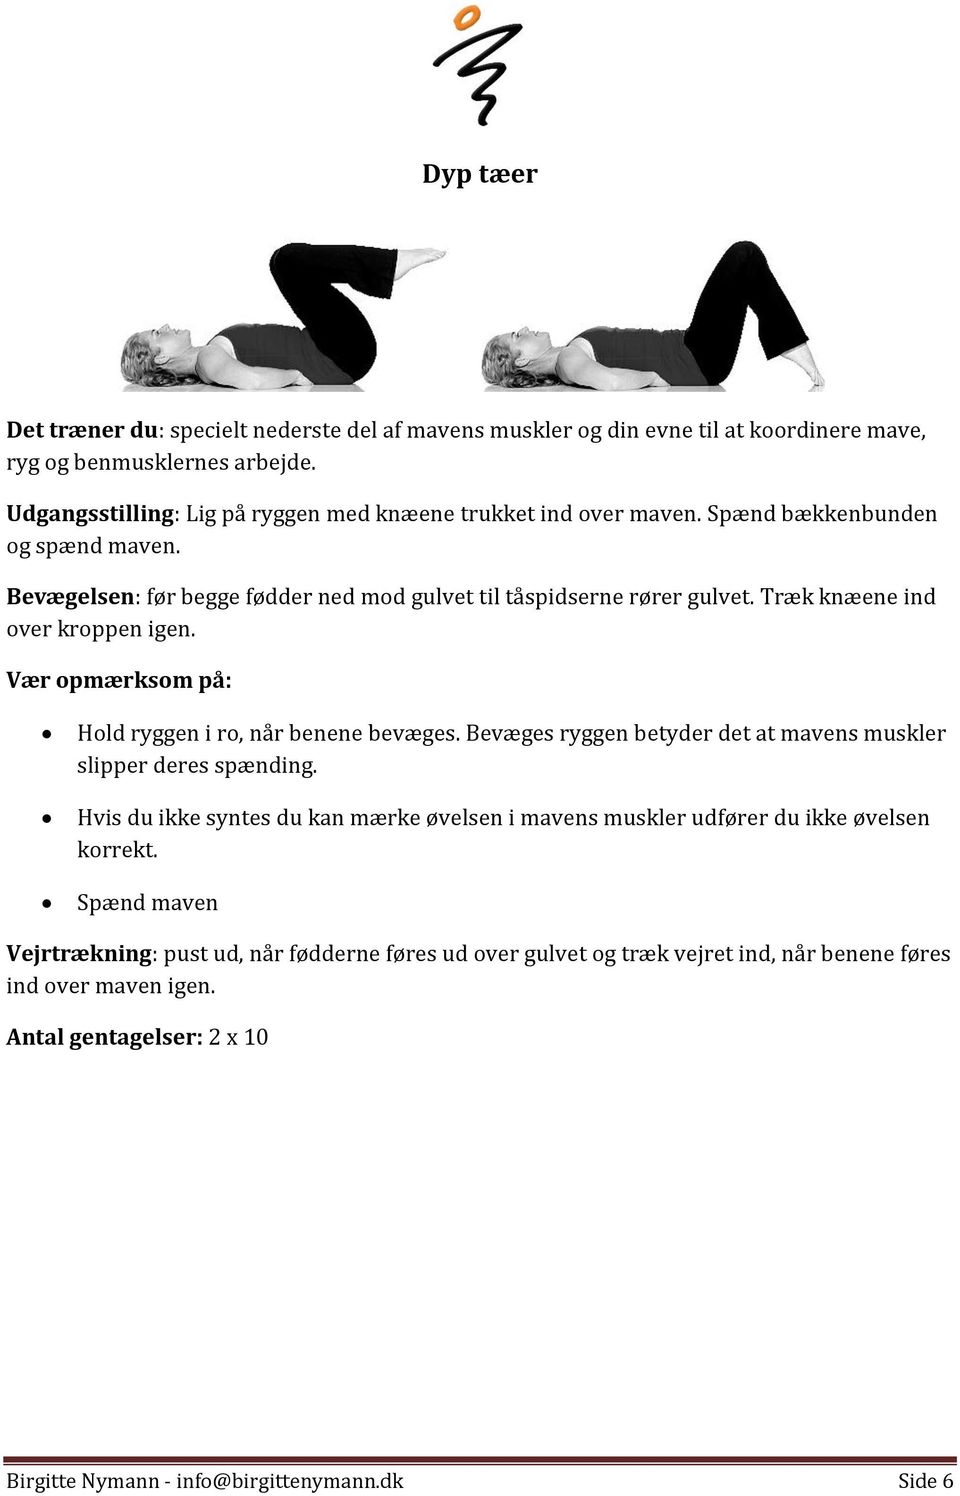 Træk knæene ind over kroppen igen. Vær opmærksom på: Hold ryggen i ro, når benene bevæges. Bevæges ryggen betyder det at mavens muskler slipper deres spænding.